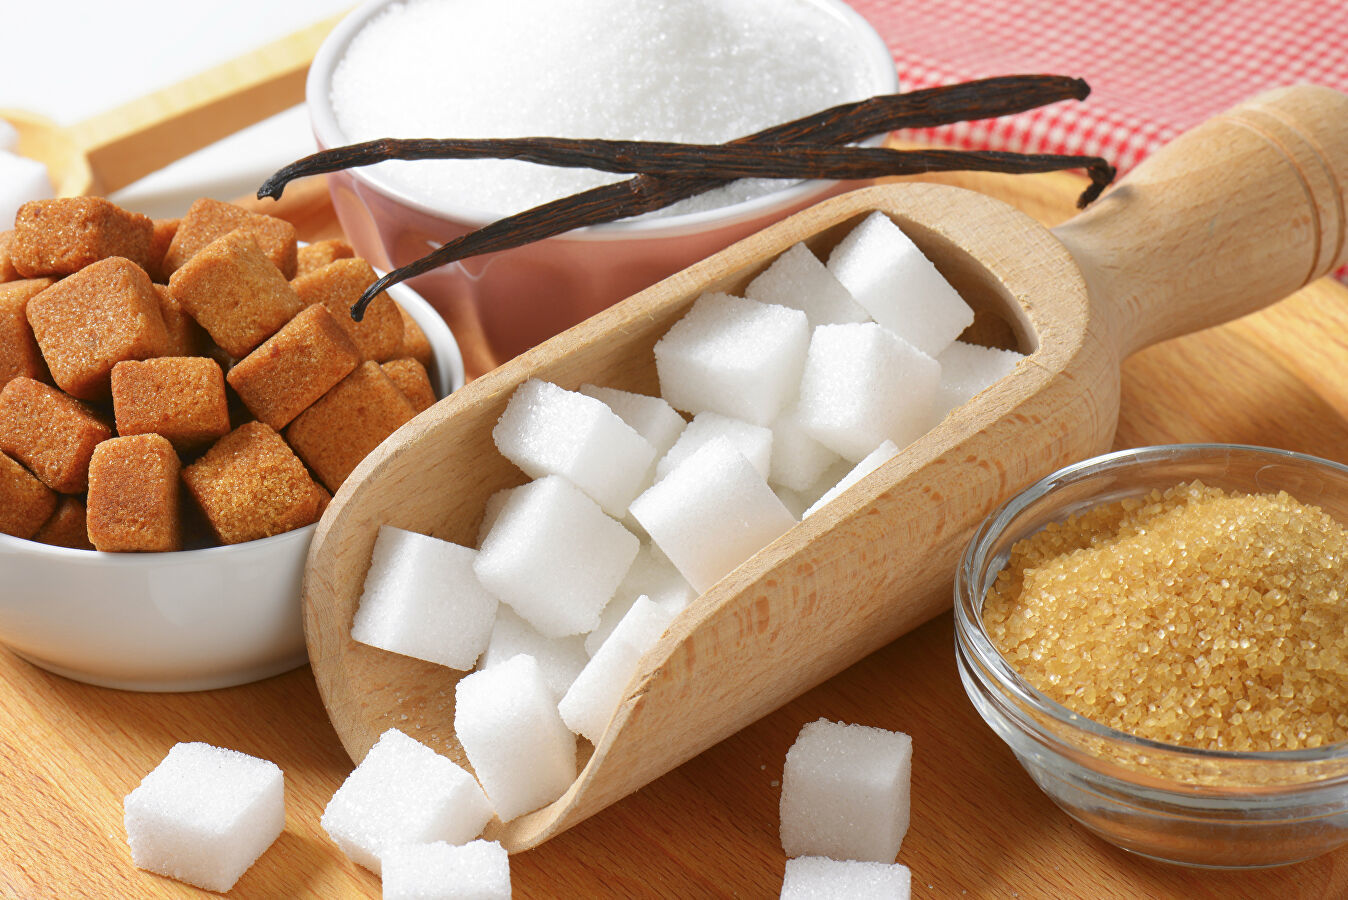 Как делают сахар из свеклы на заводе и можно ли получить его в домашних условиях самостоятельно